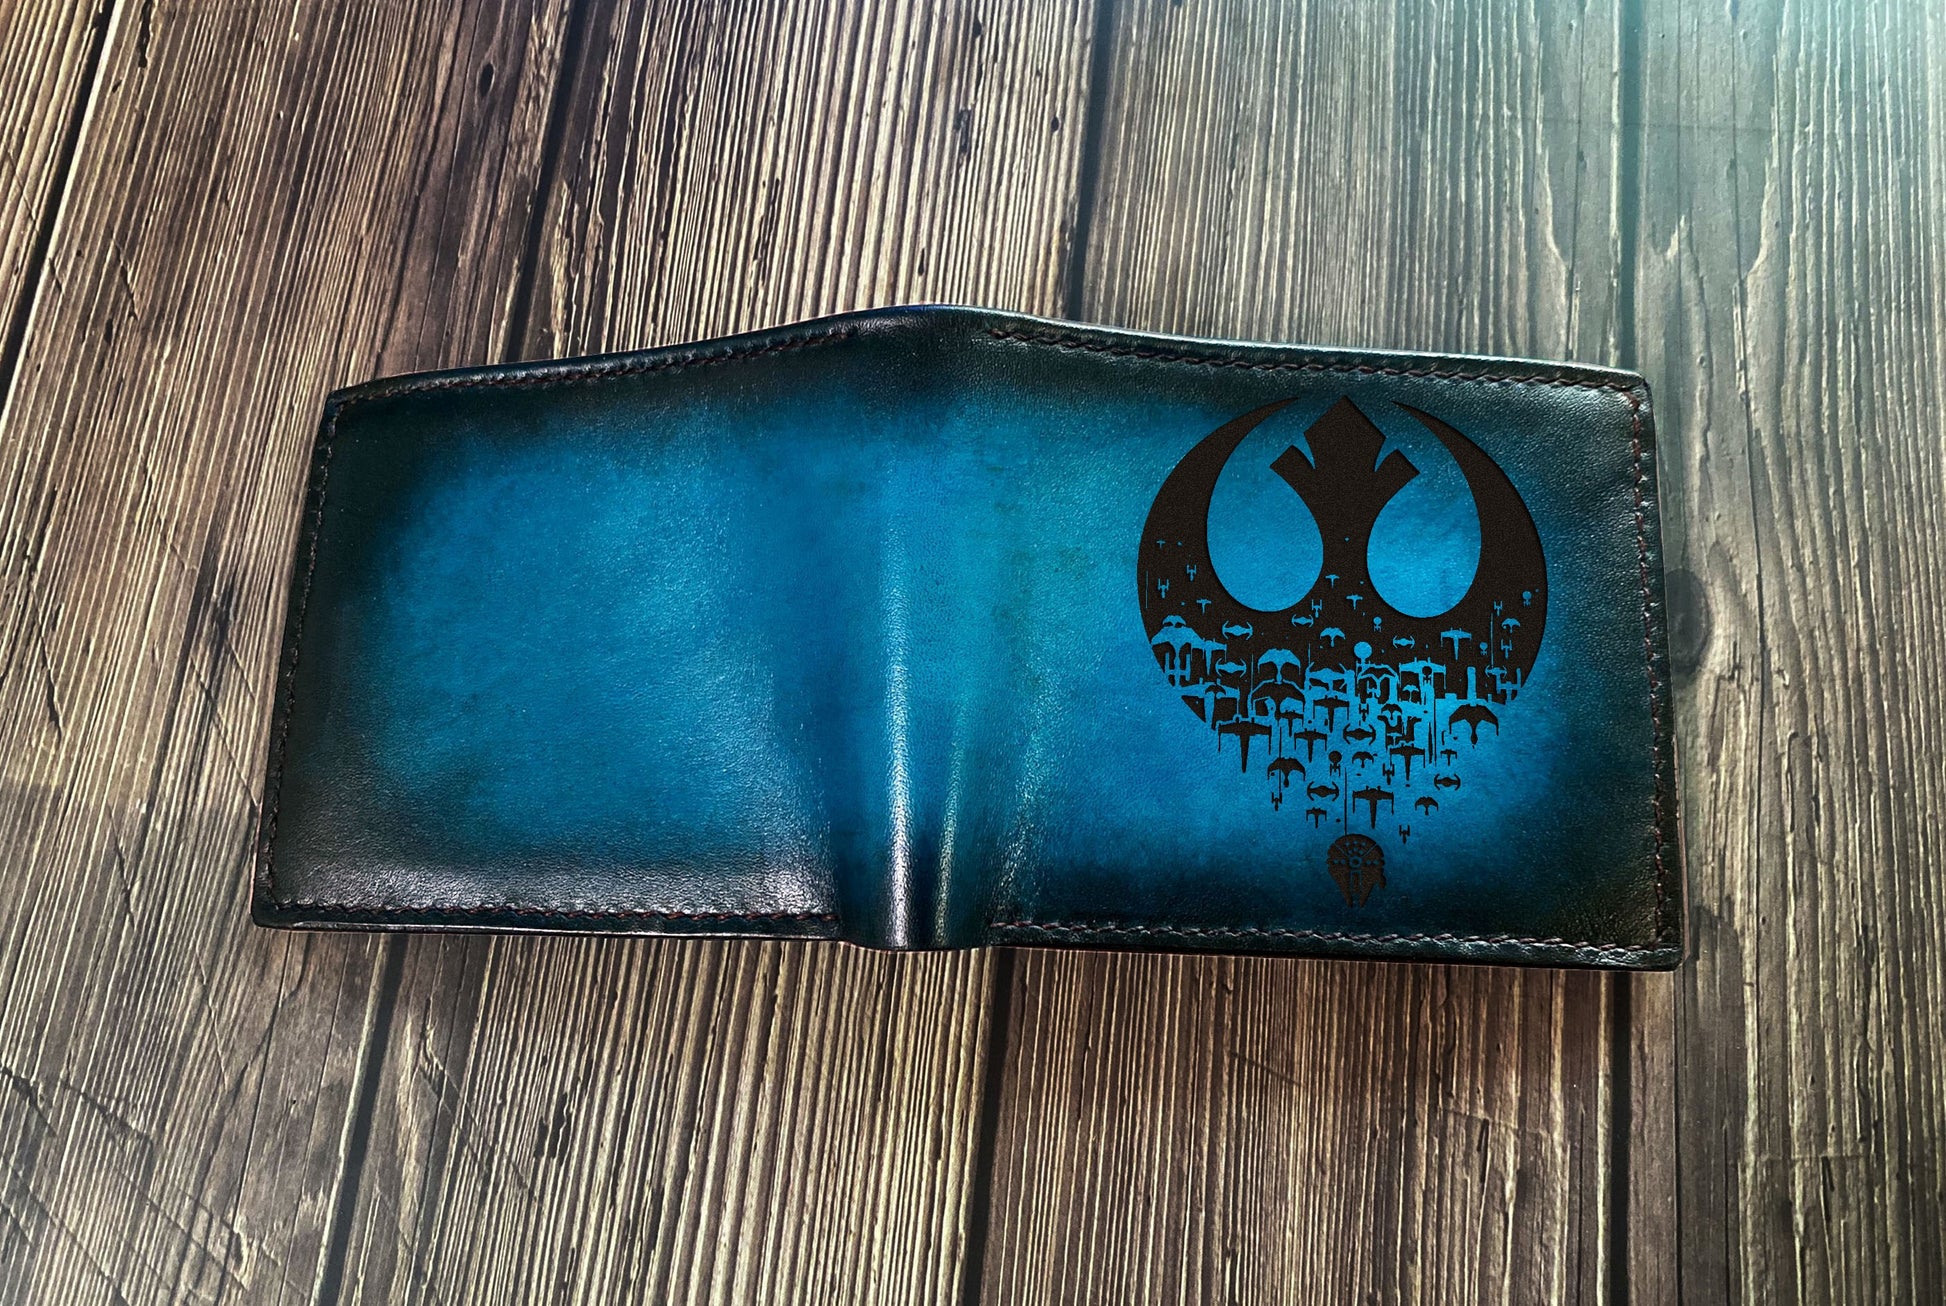 Jedi Starwars logo engraving wallet, starwars men's wallet, gift for him, birthday anniversary starwars style present, wedding gift ideas